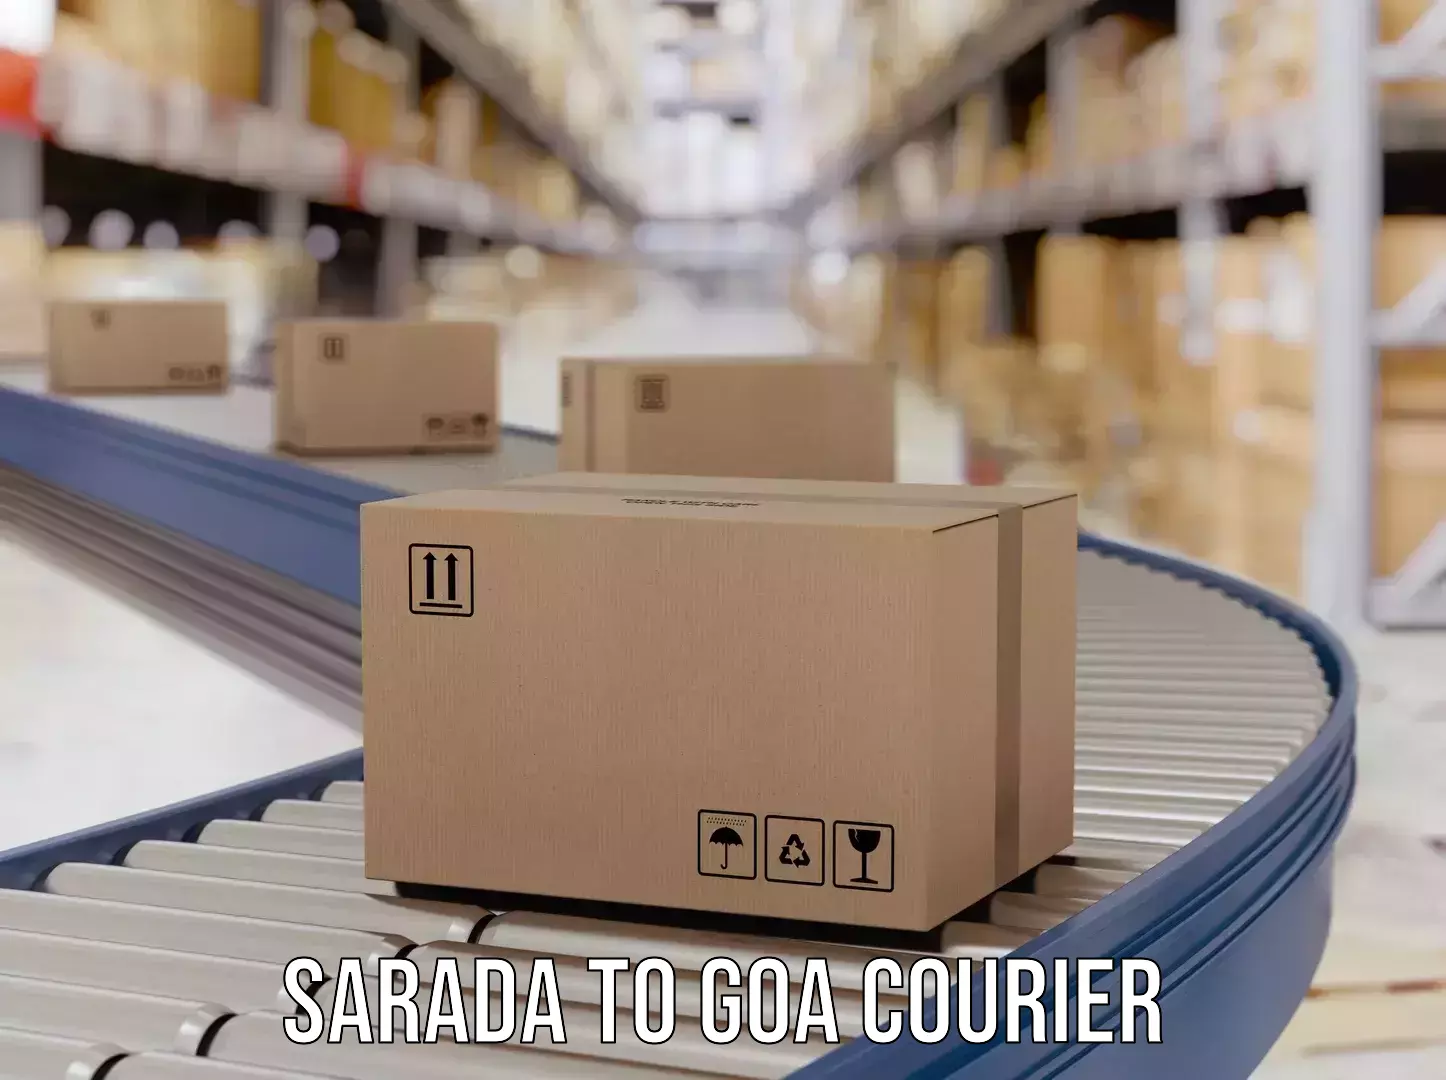 Express courier capabilities Sarada to Vasco da Gama